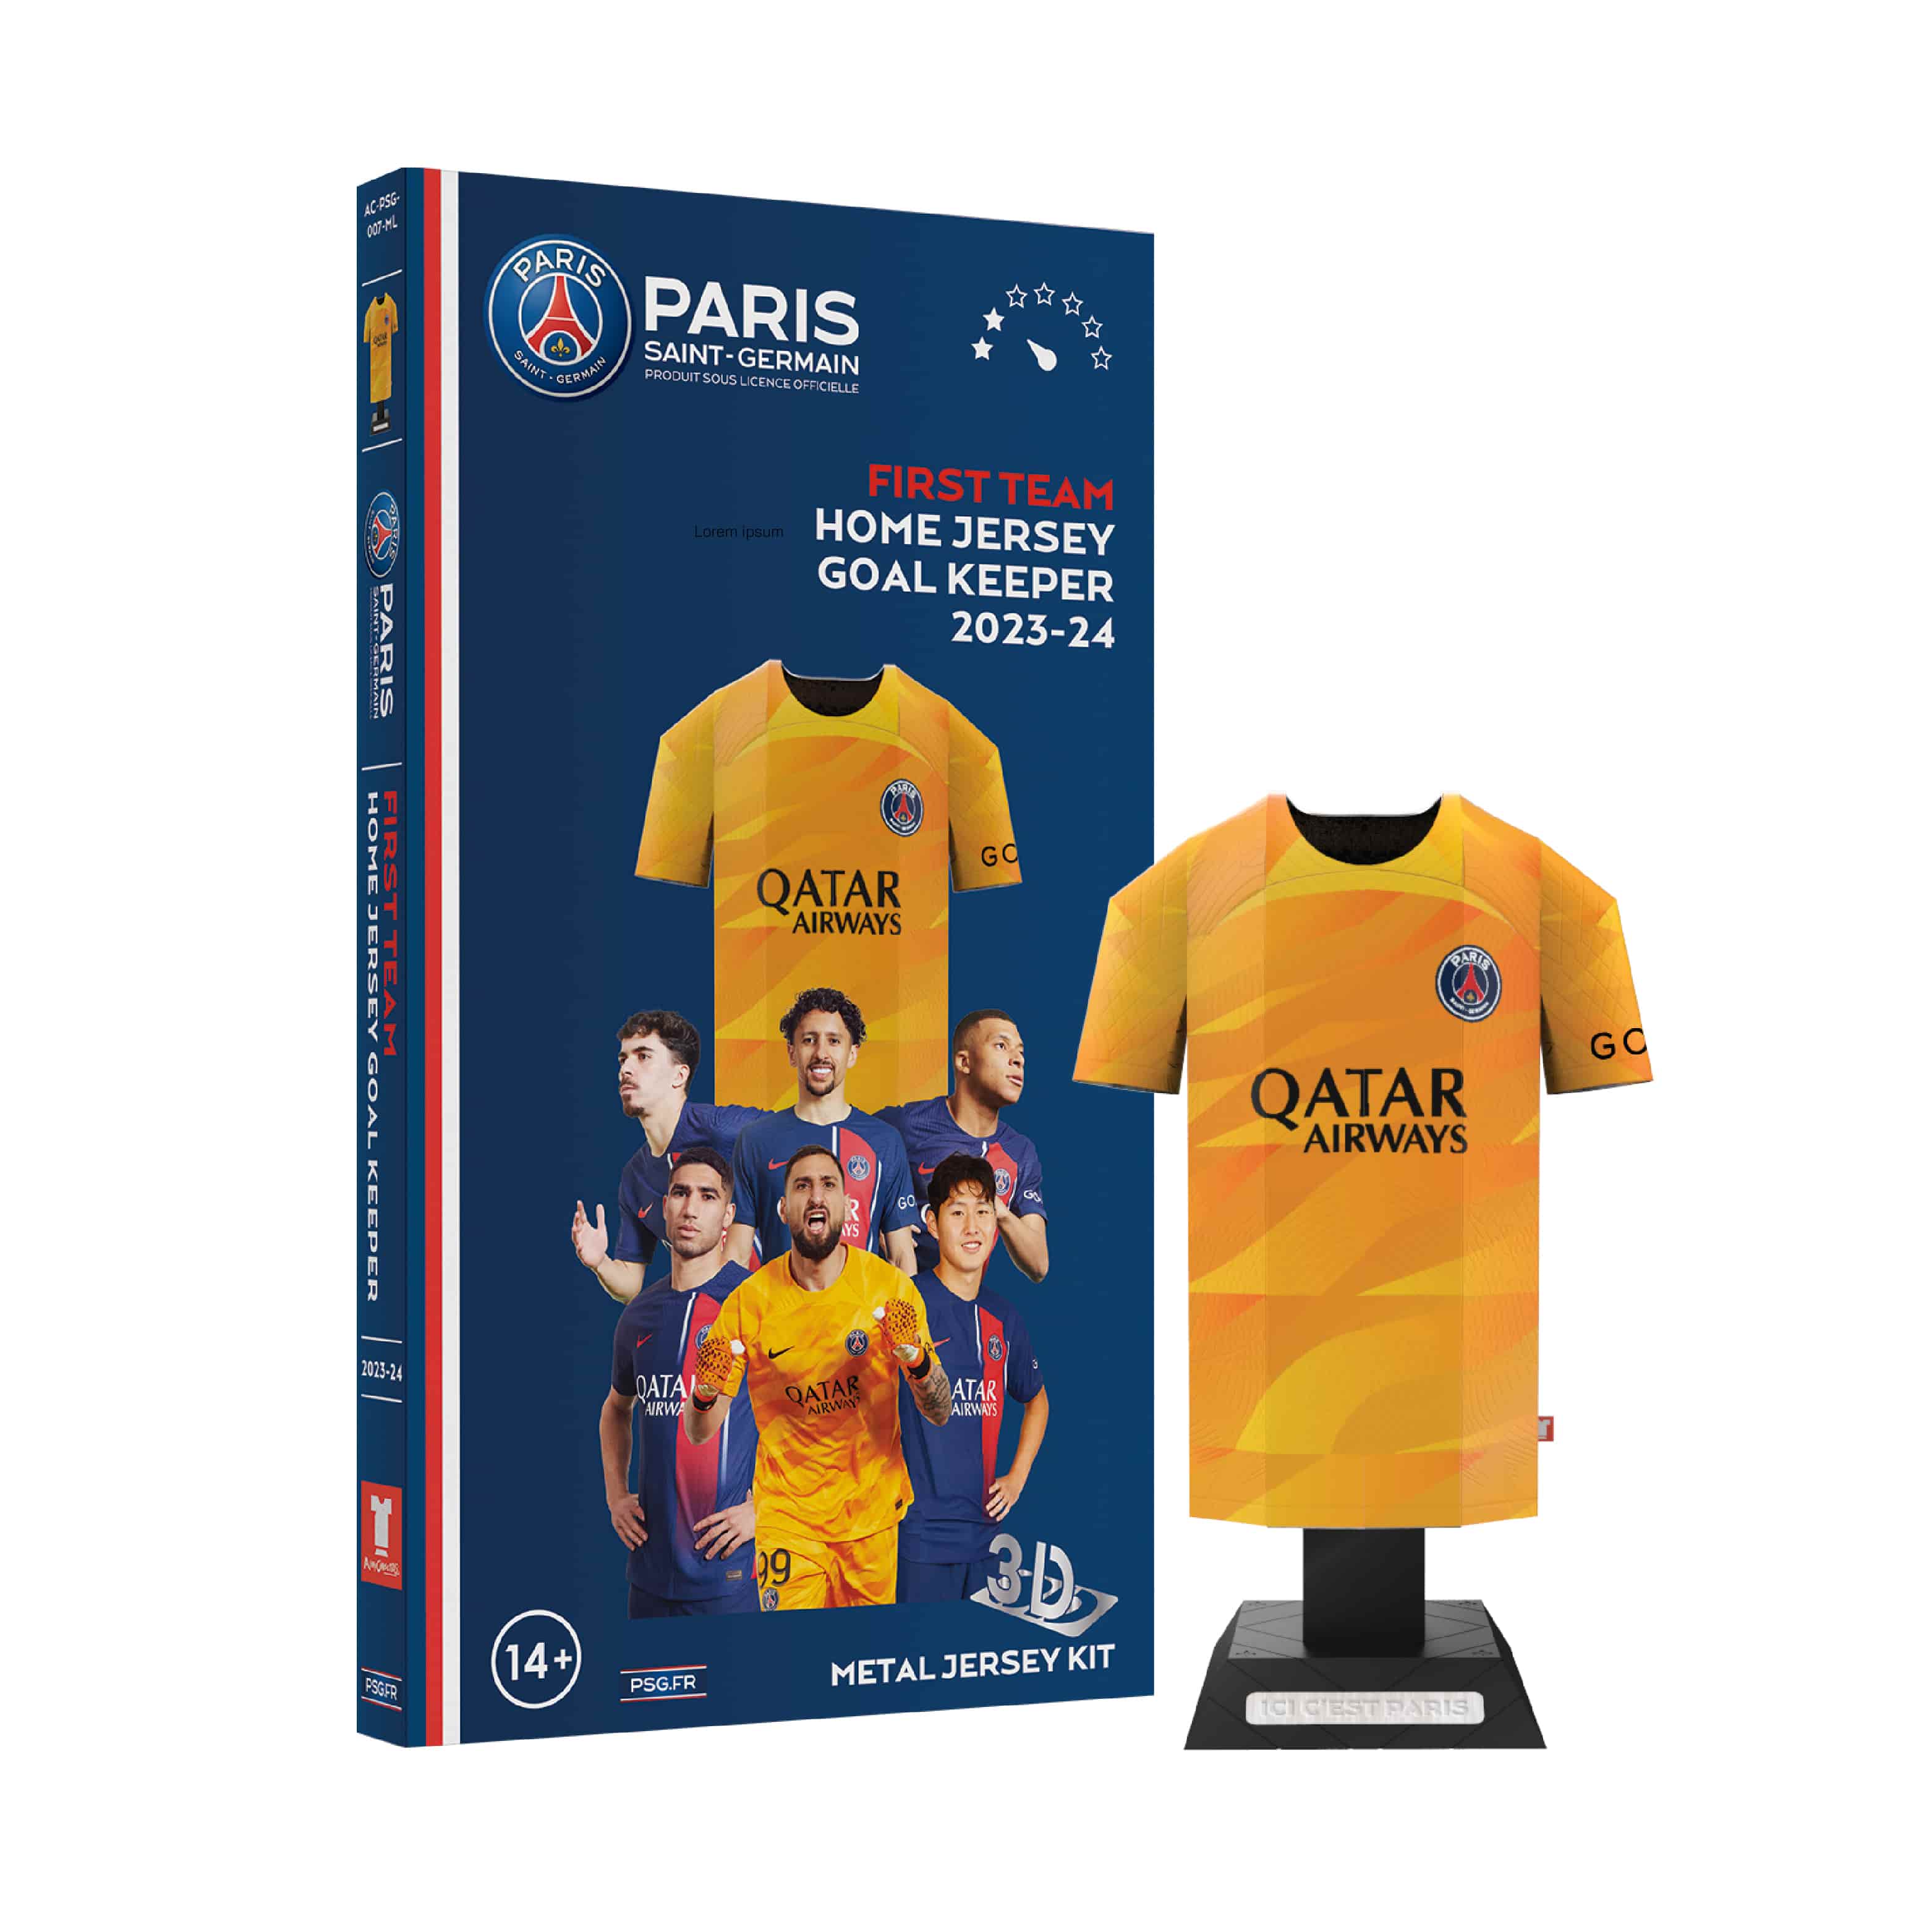 23/24 PSG Goalkeeper kit with image